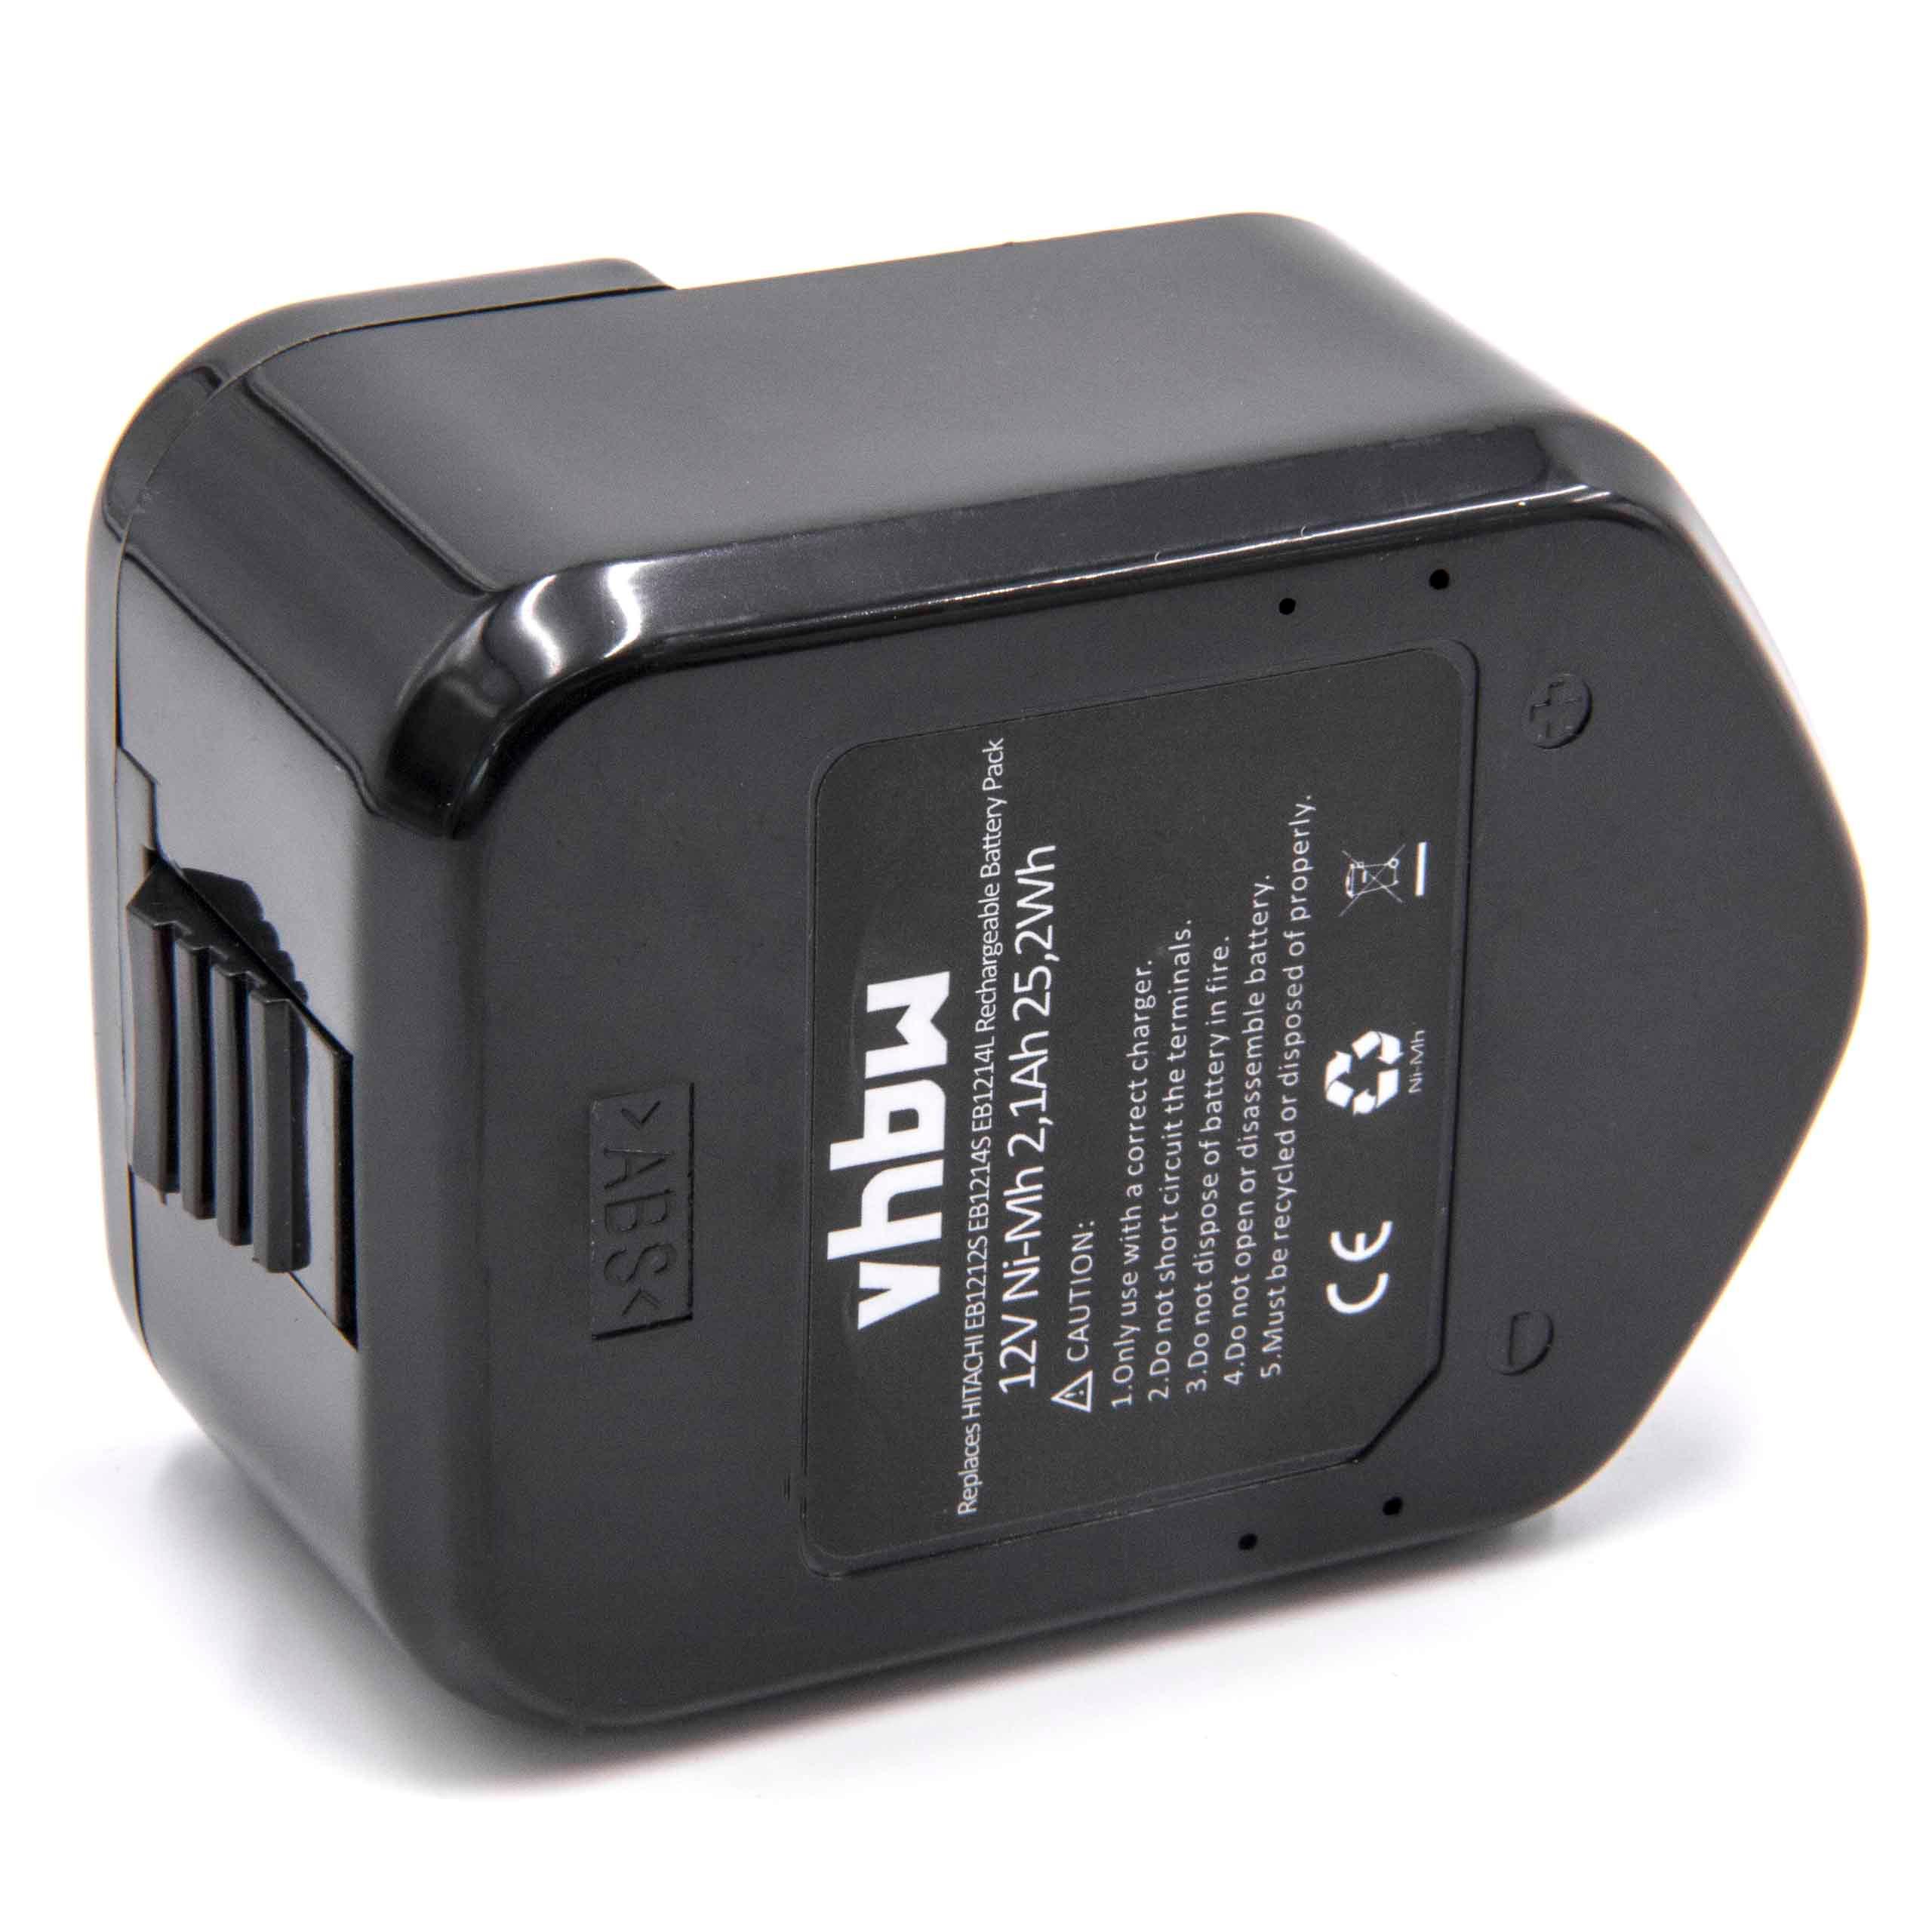 Batteria per attrezzo sostituisce Hitachi 320608, 320606, 320388, 320387, 320386 - 2100 mAh, 12 V, NiMH